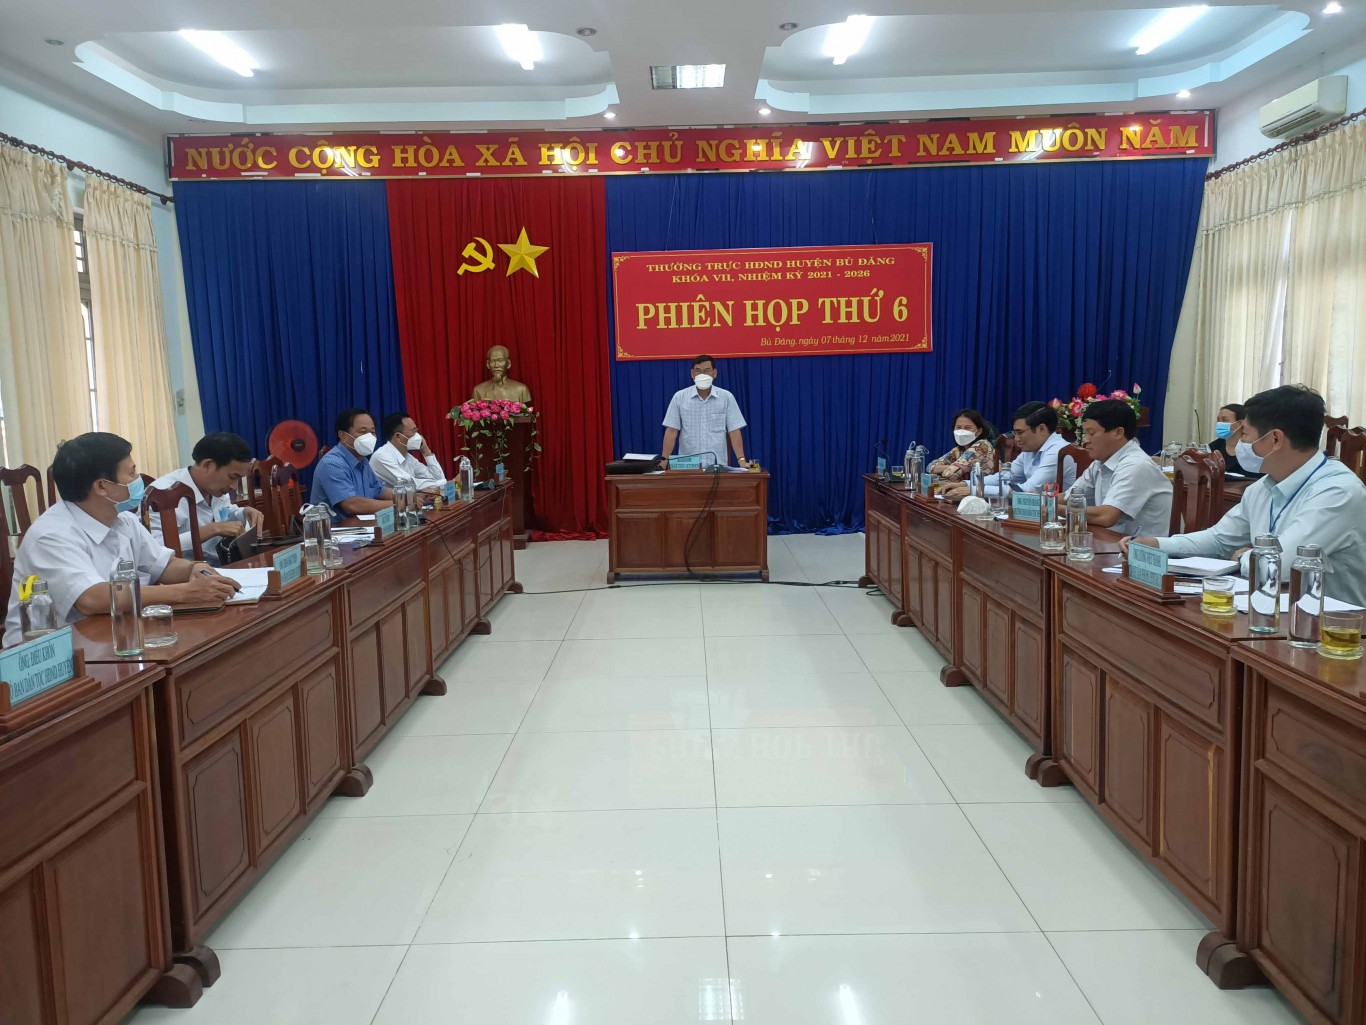 Toàn cảnh phiên họp thứ 6 HĐND huyện Bù Đăng khóa VII nhiệm kỳ 2021 2026